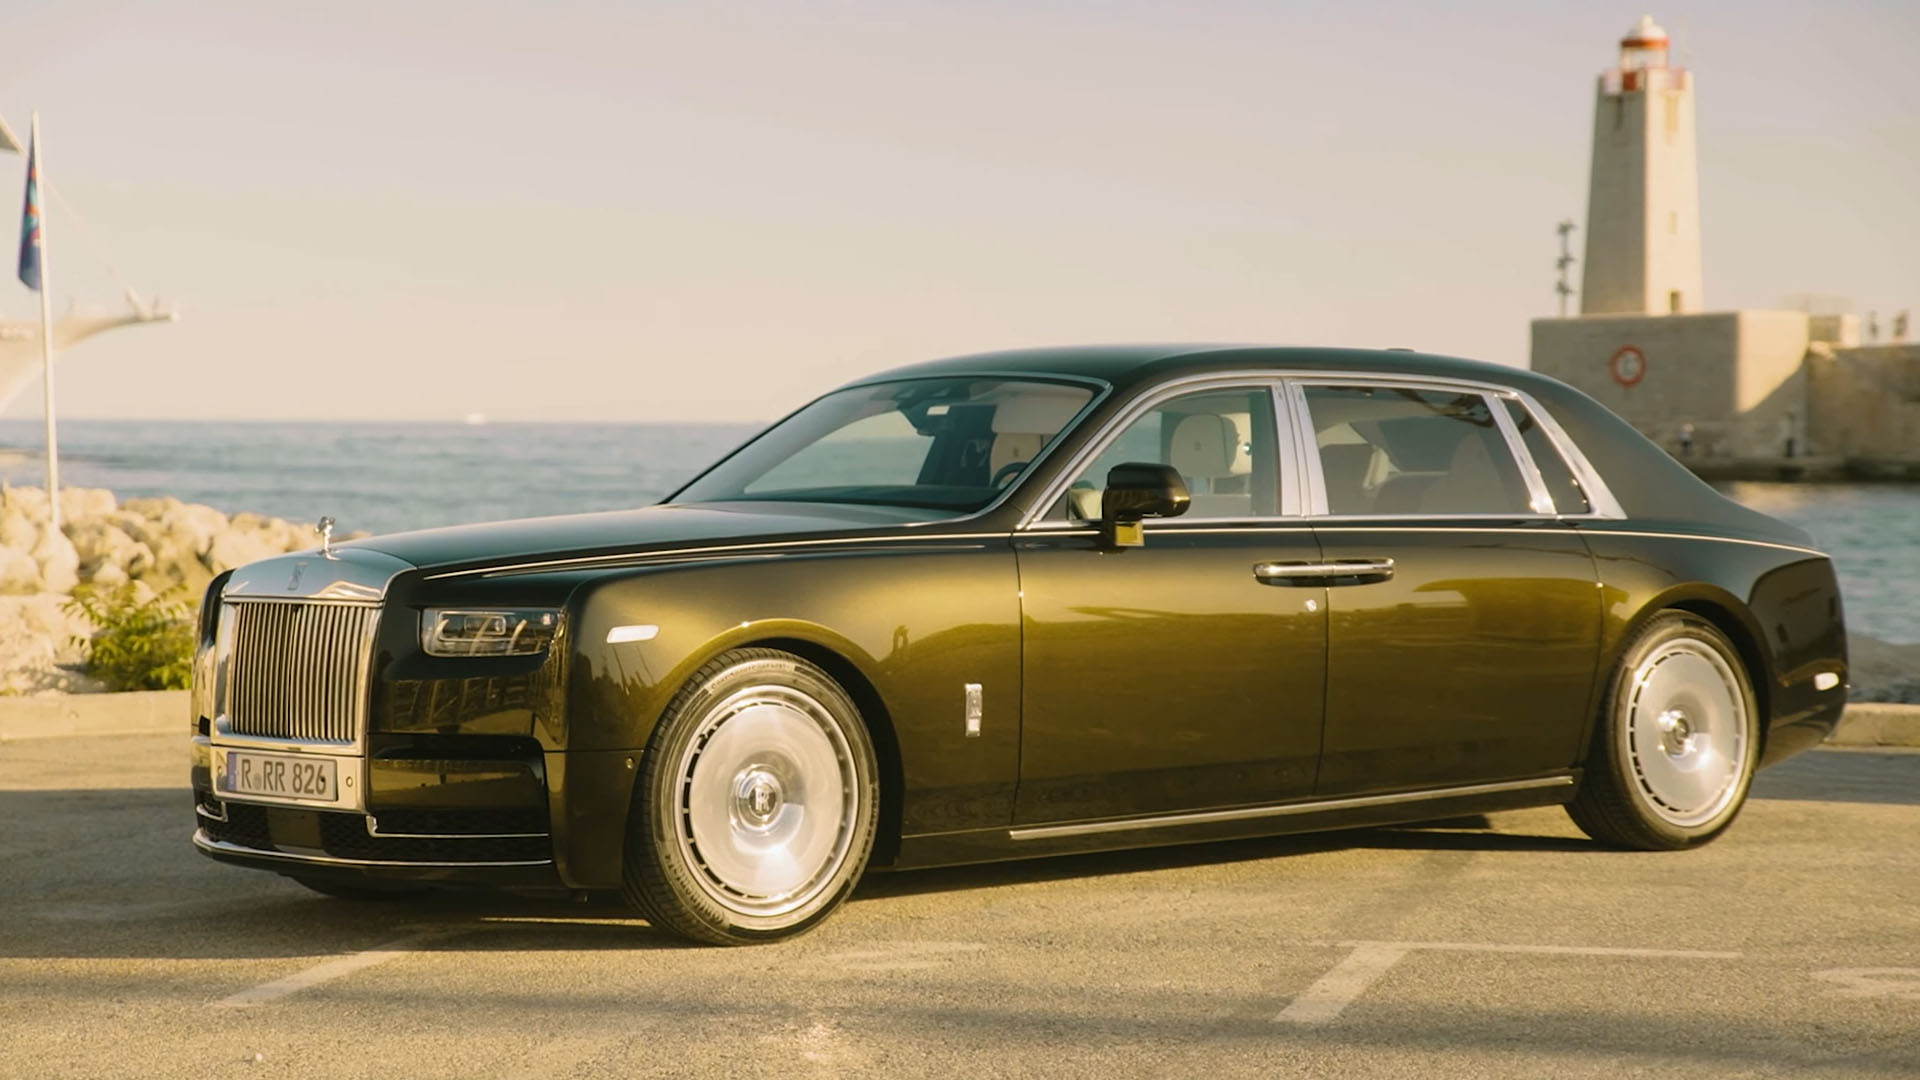 Making the best better, the new Rolls Royce Phantom | Supercars.net